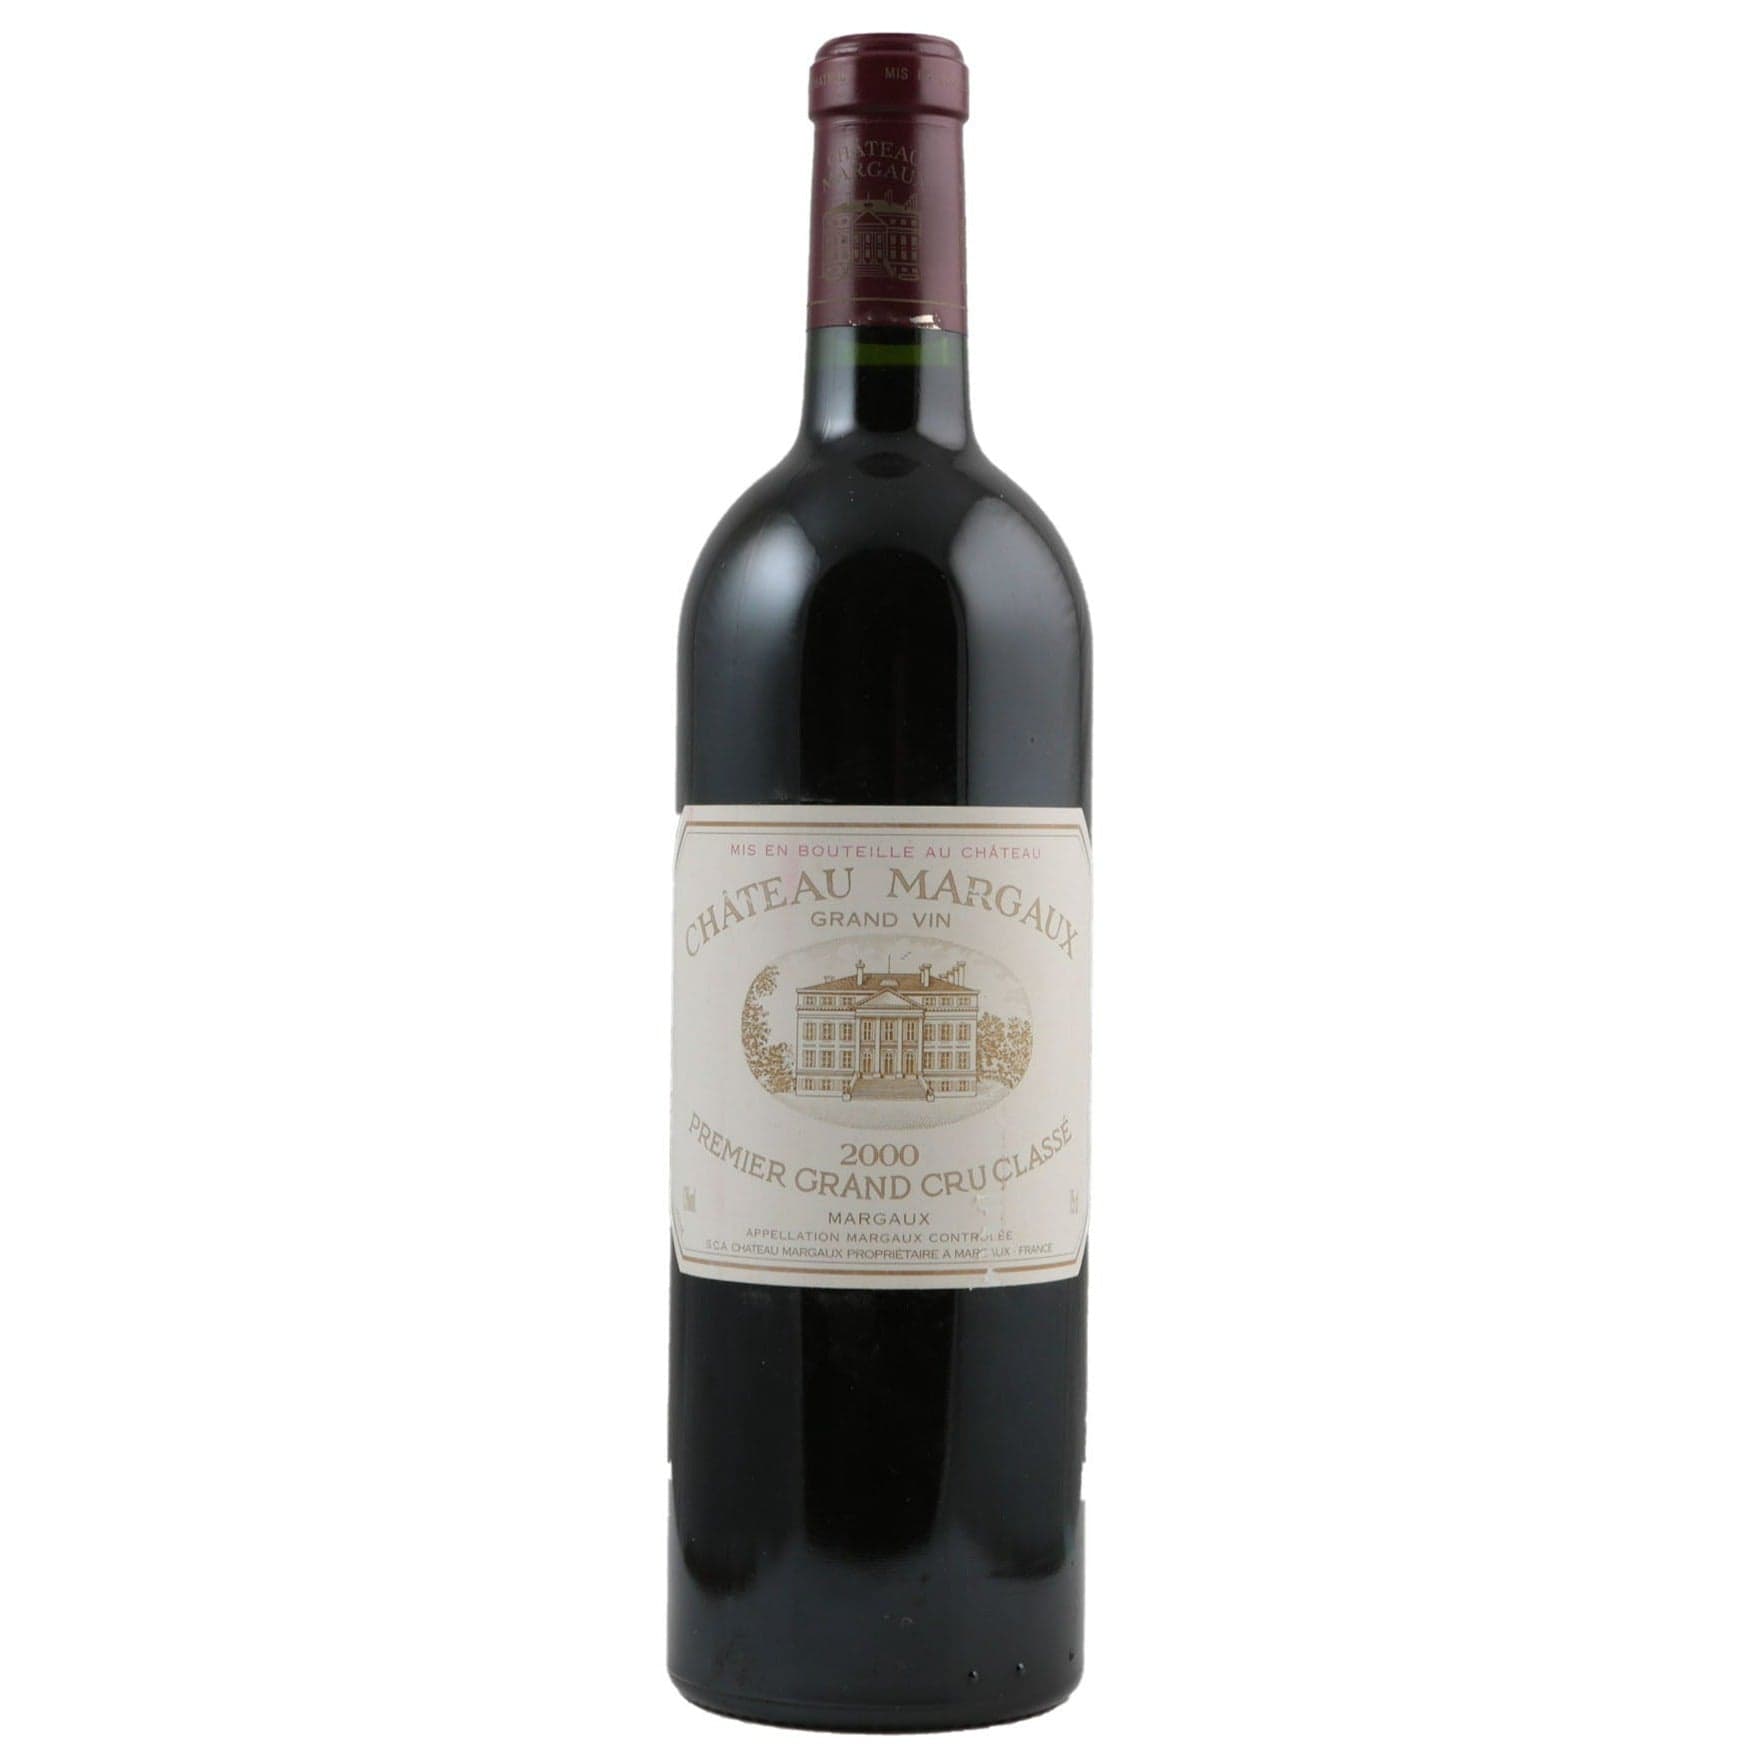 Single bottle of Red wine Ch. Margaux, 1st Growth Grand Cru Classe, Margaux, 2000 Cabernet Sauvignon, Merlot, Petit Verdot & Cabernet Franc